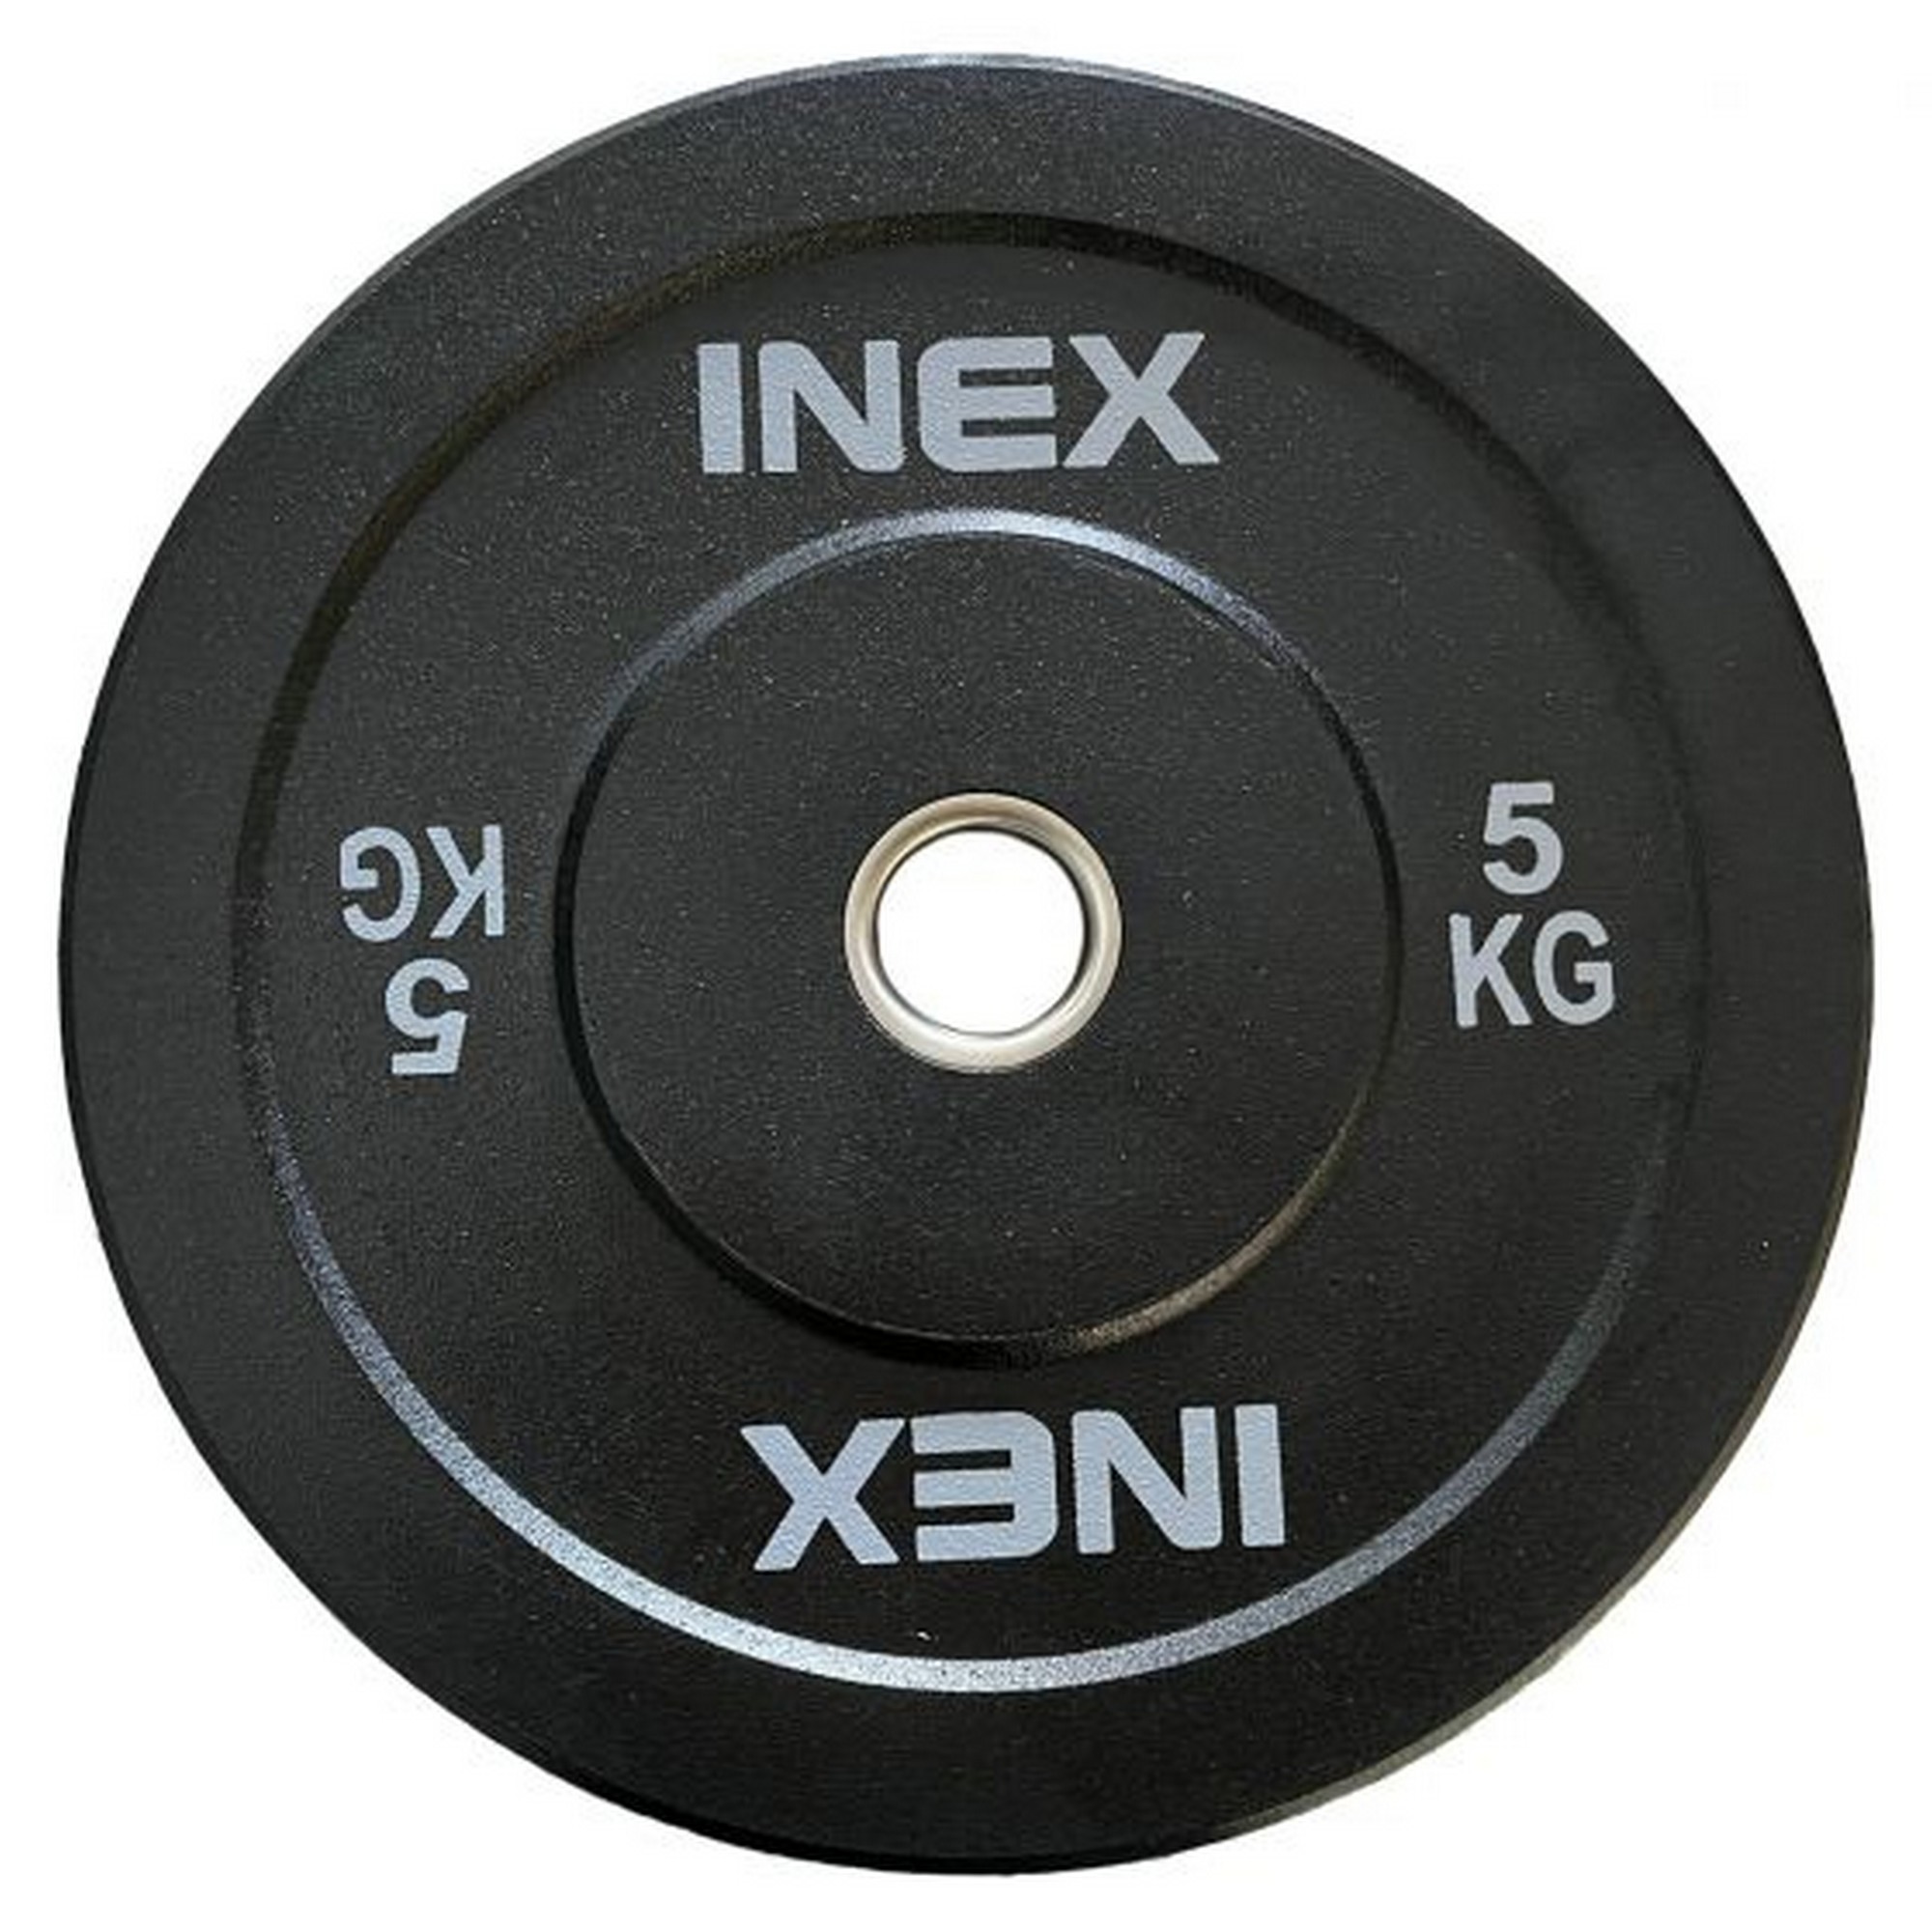 Бампированный диск 5кг Inex Hi-Temp TF-P4001-05 черный-серый 2000_2000